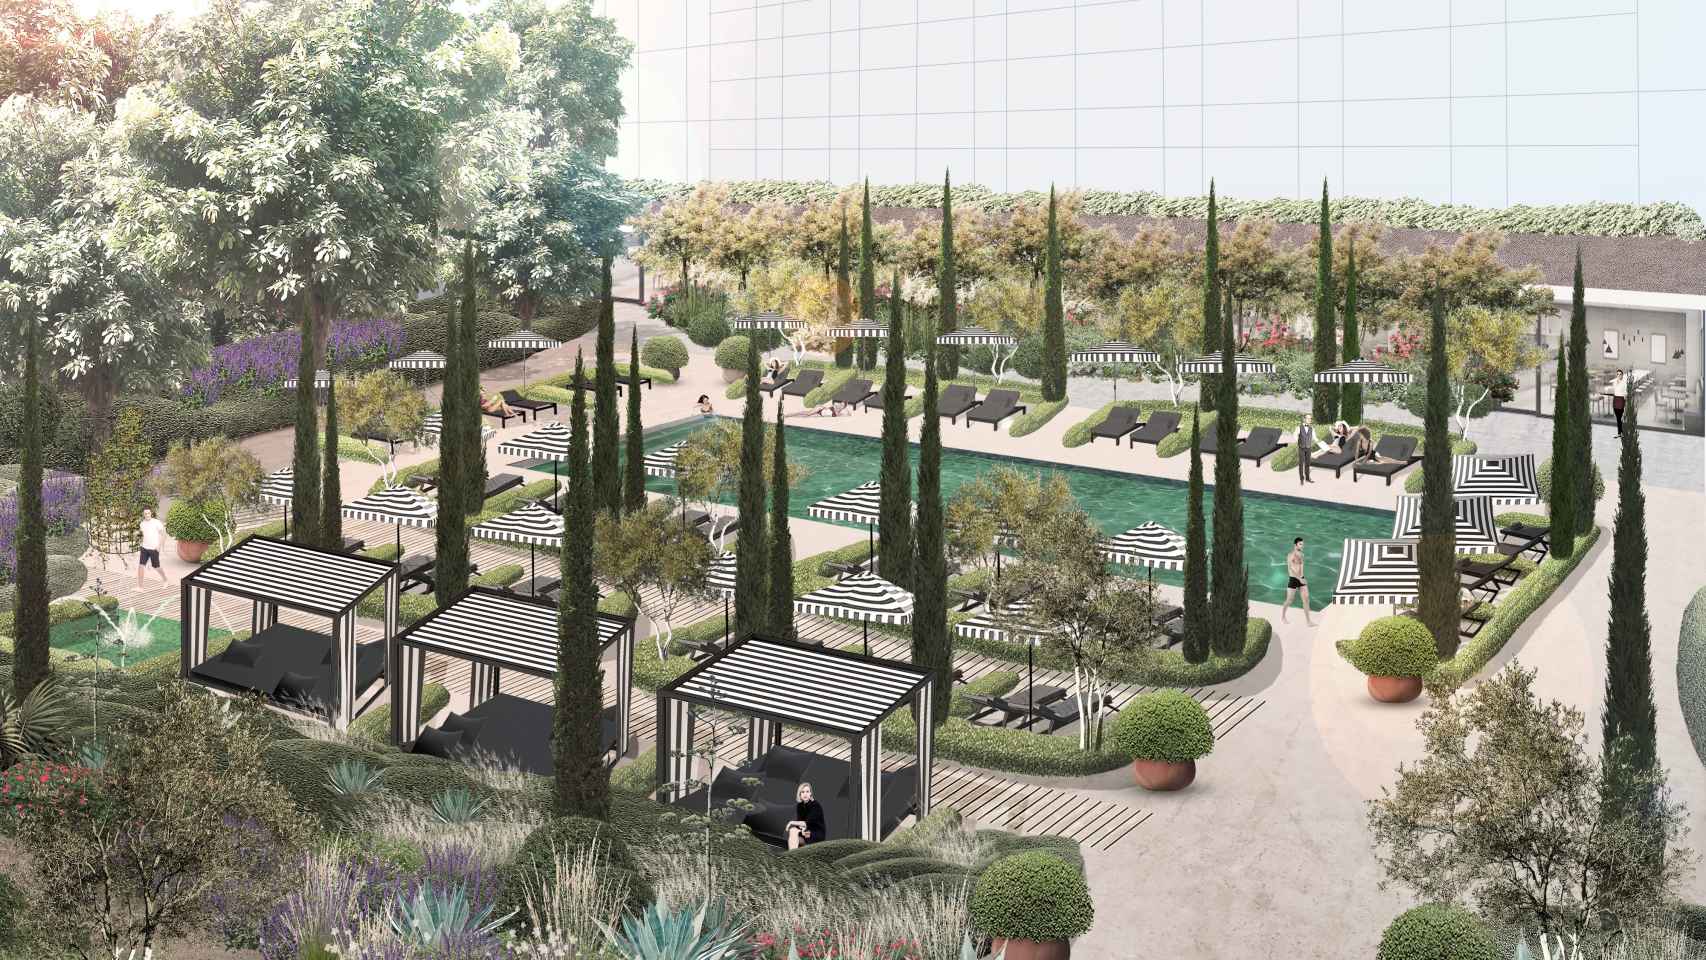 Diseño de la zona de piscina y jardines.